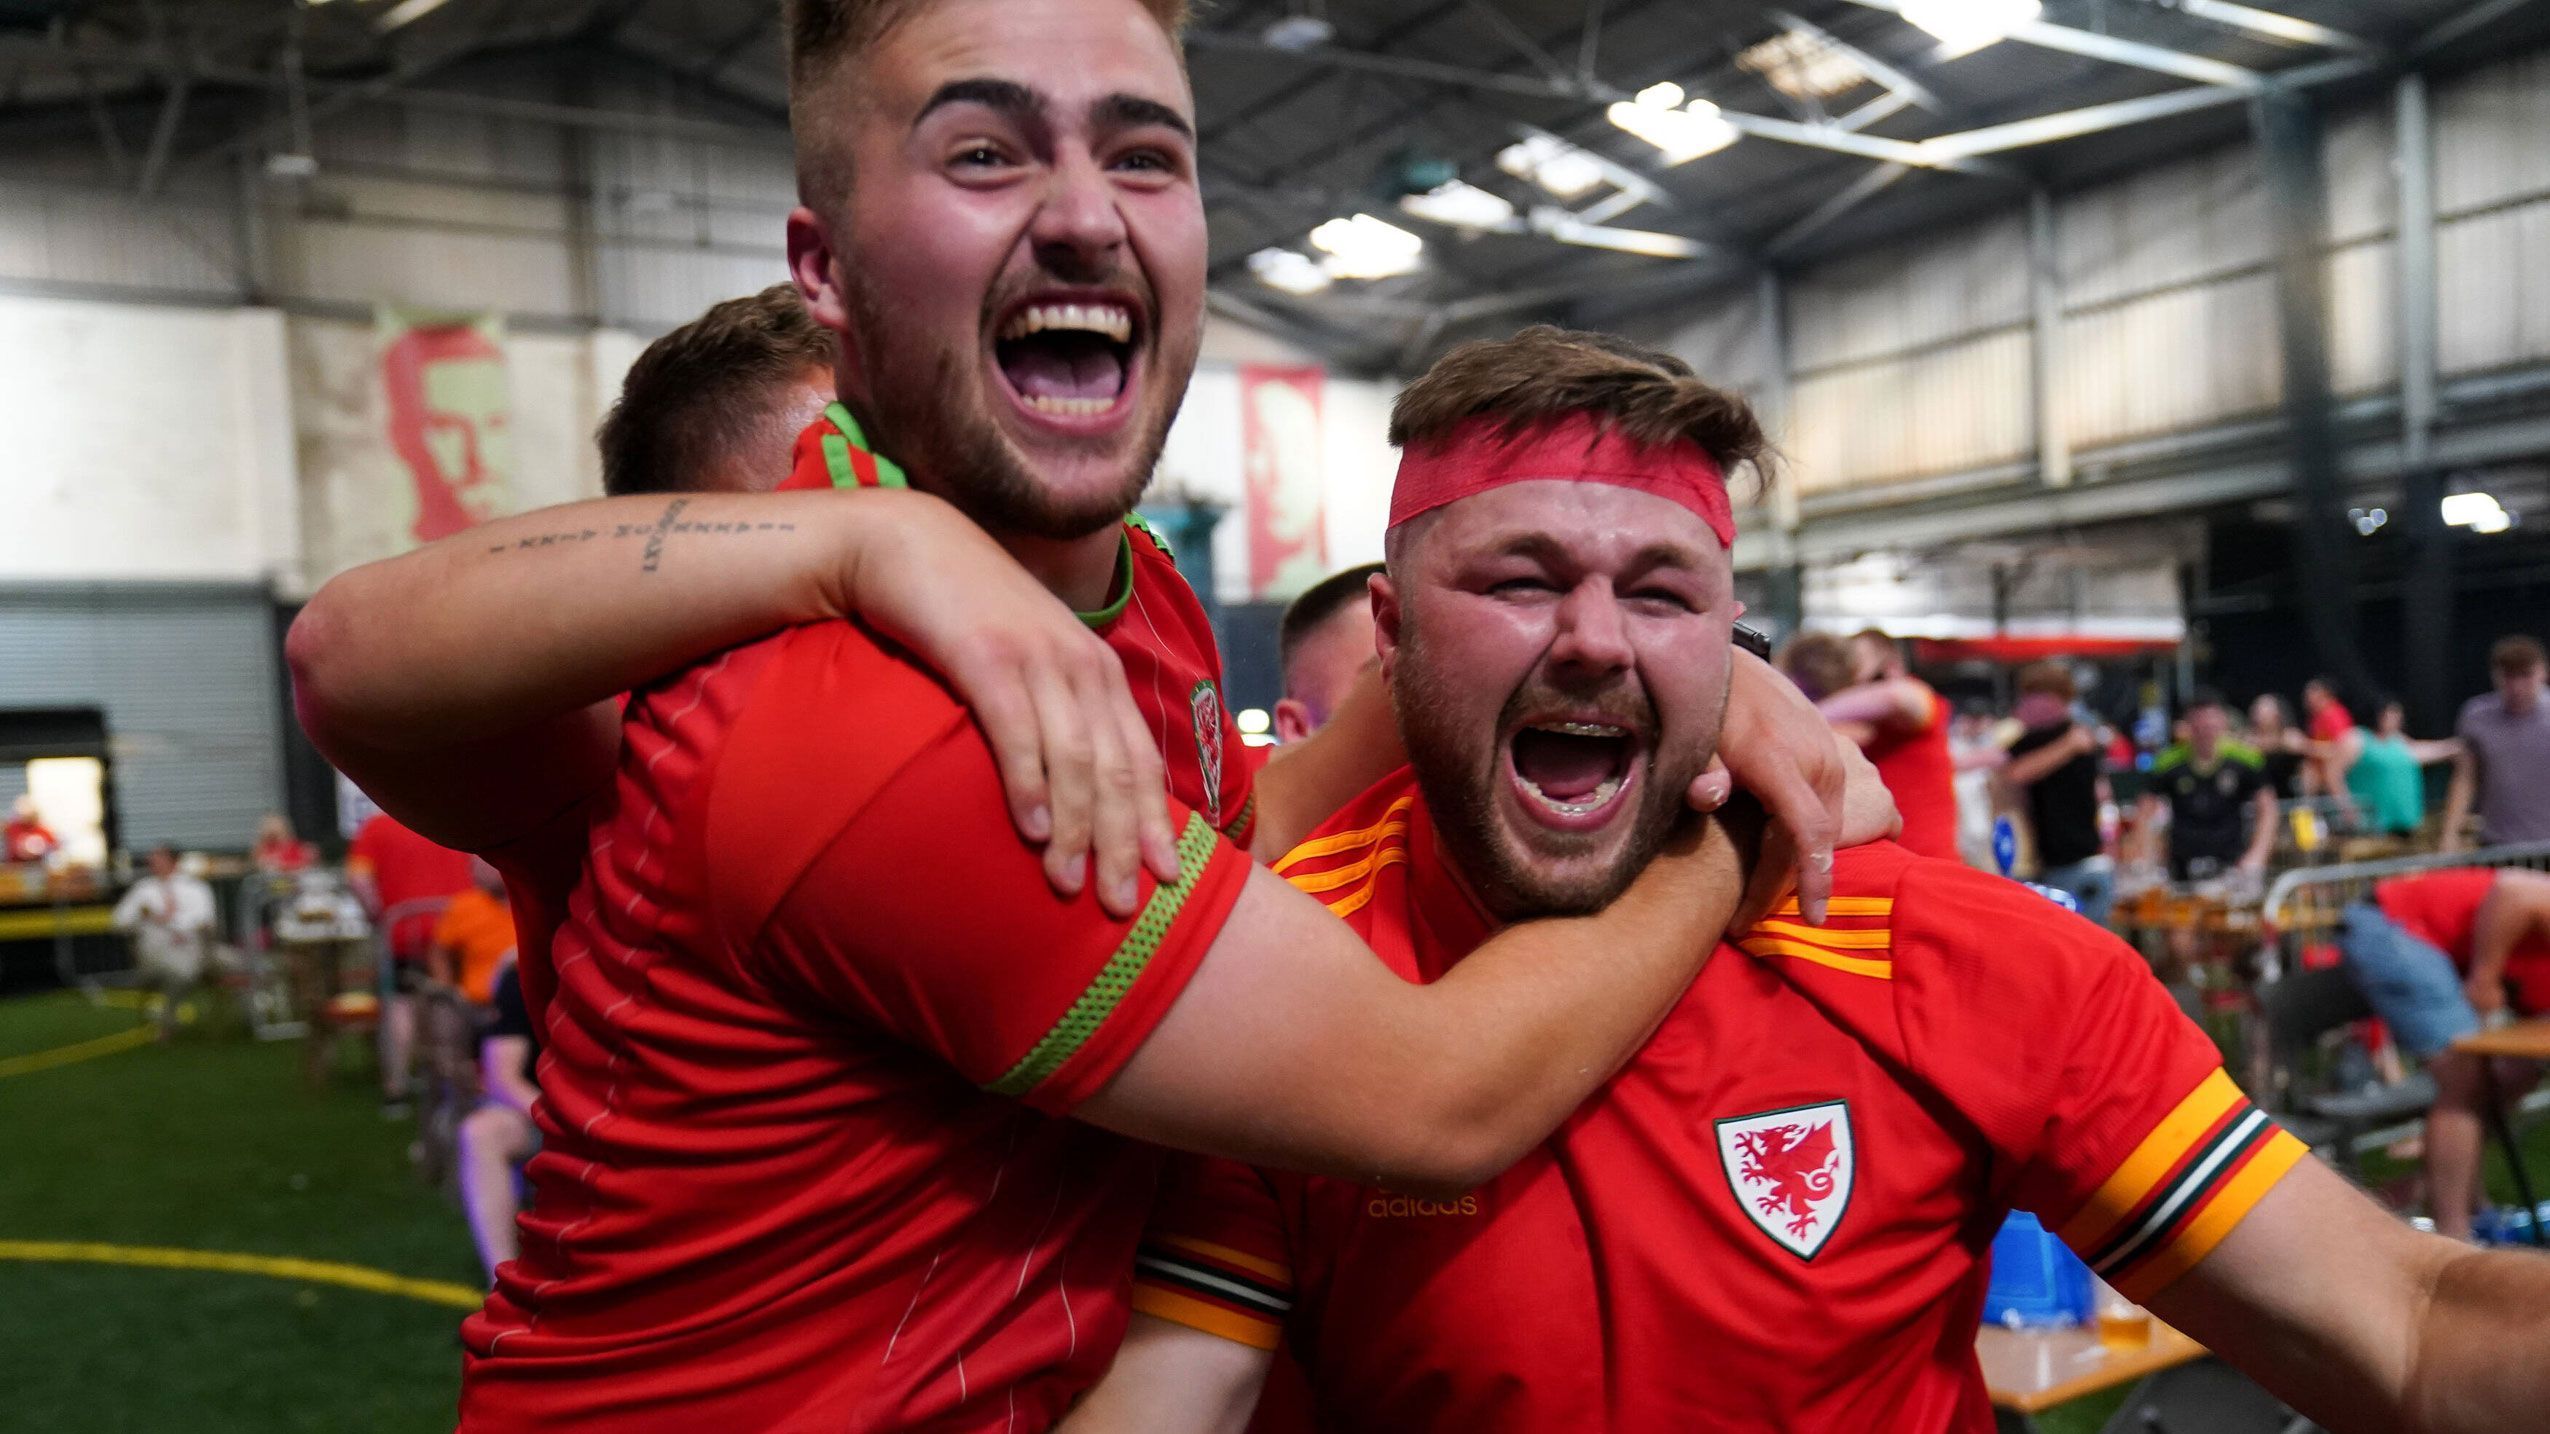 
                <strong>Wales-Fans feiern in Cardiff</strong><br>
                Dennoch fahren die Briten am Ende drei Punkte ein und machen kurz vor Schluss durch Roberts doch noch das 2:0. In der Vale Arena in Cardiff feiern die Anhänger der Waliser euphorisch den Sieg ihrer Mannschaft.
              